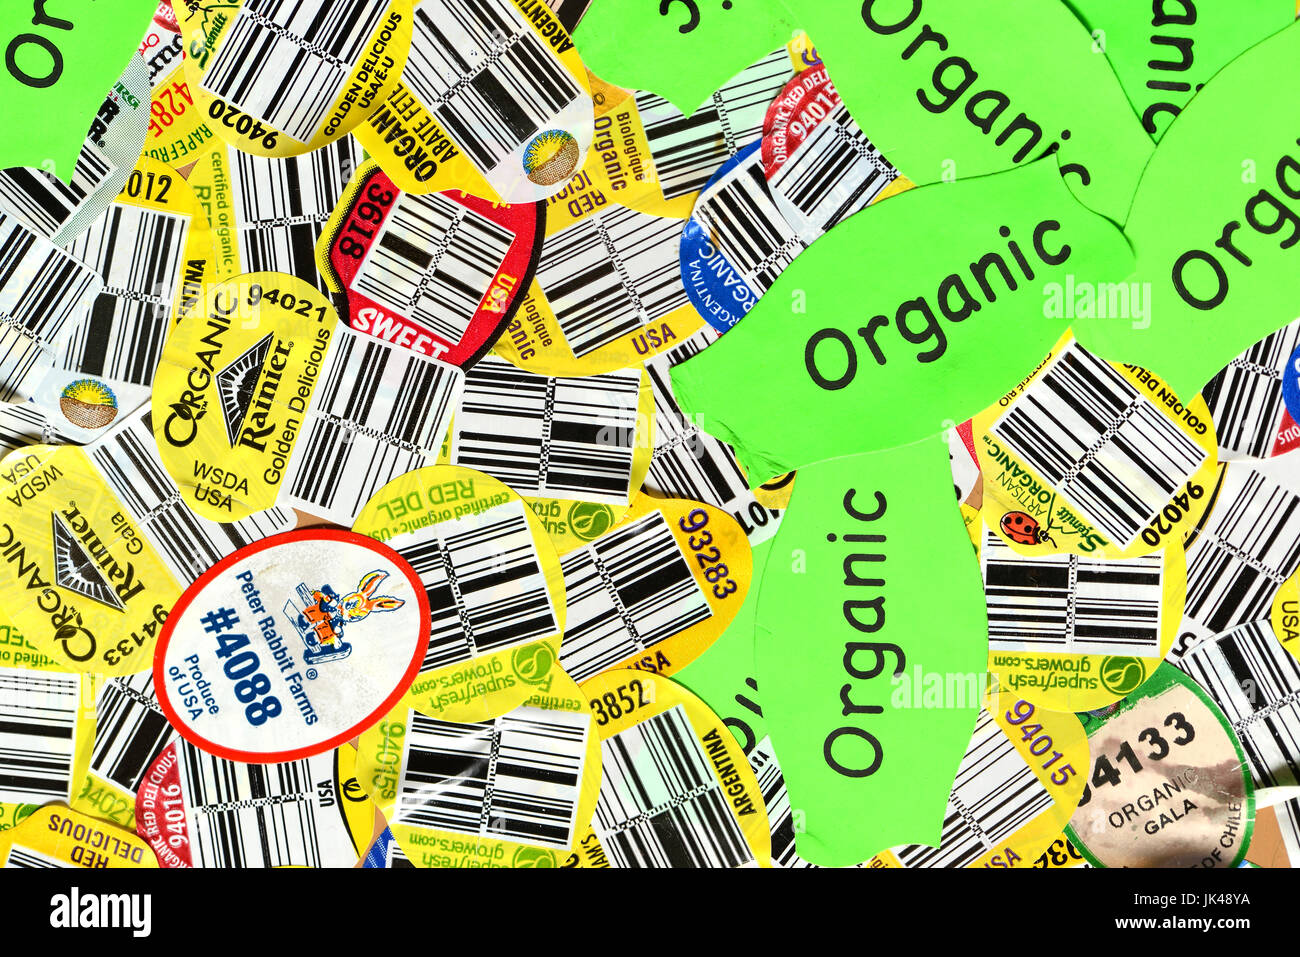 Pegatinas con códigos UPC y otras, las etiquetas de los alimentos orgánicos y no orgánicos utilizados para etiquetar productos en las tiendas. Foto de stock